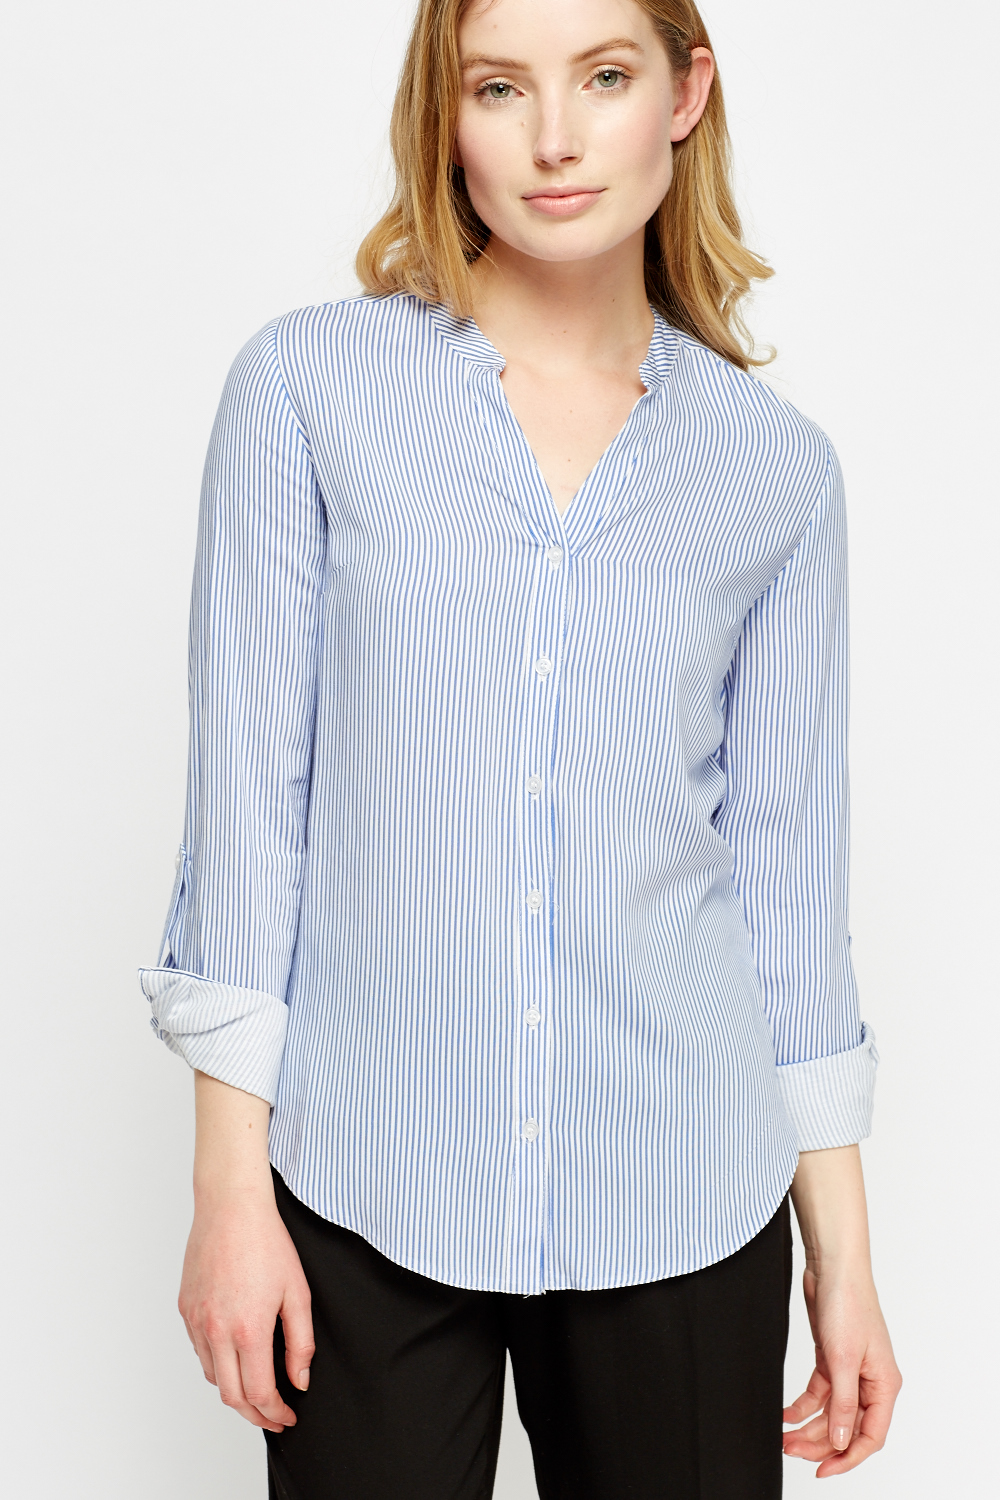 Blue Pinstripe Shirt - Just $7